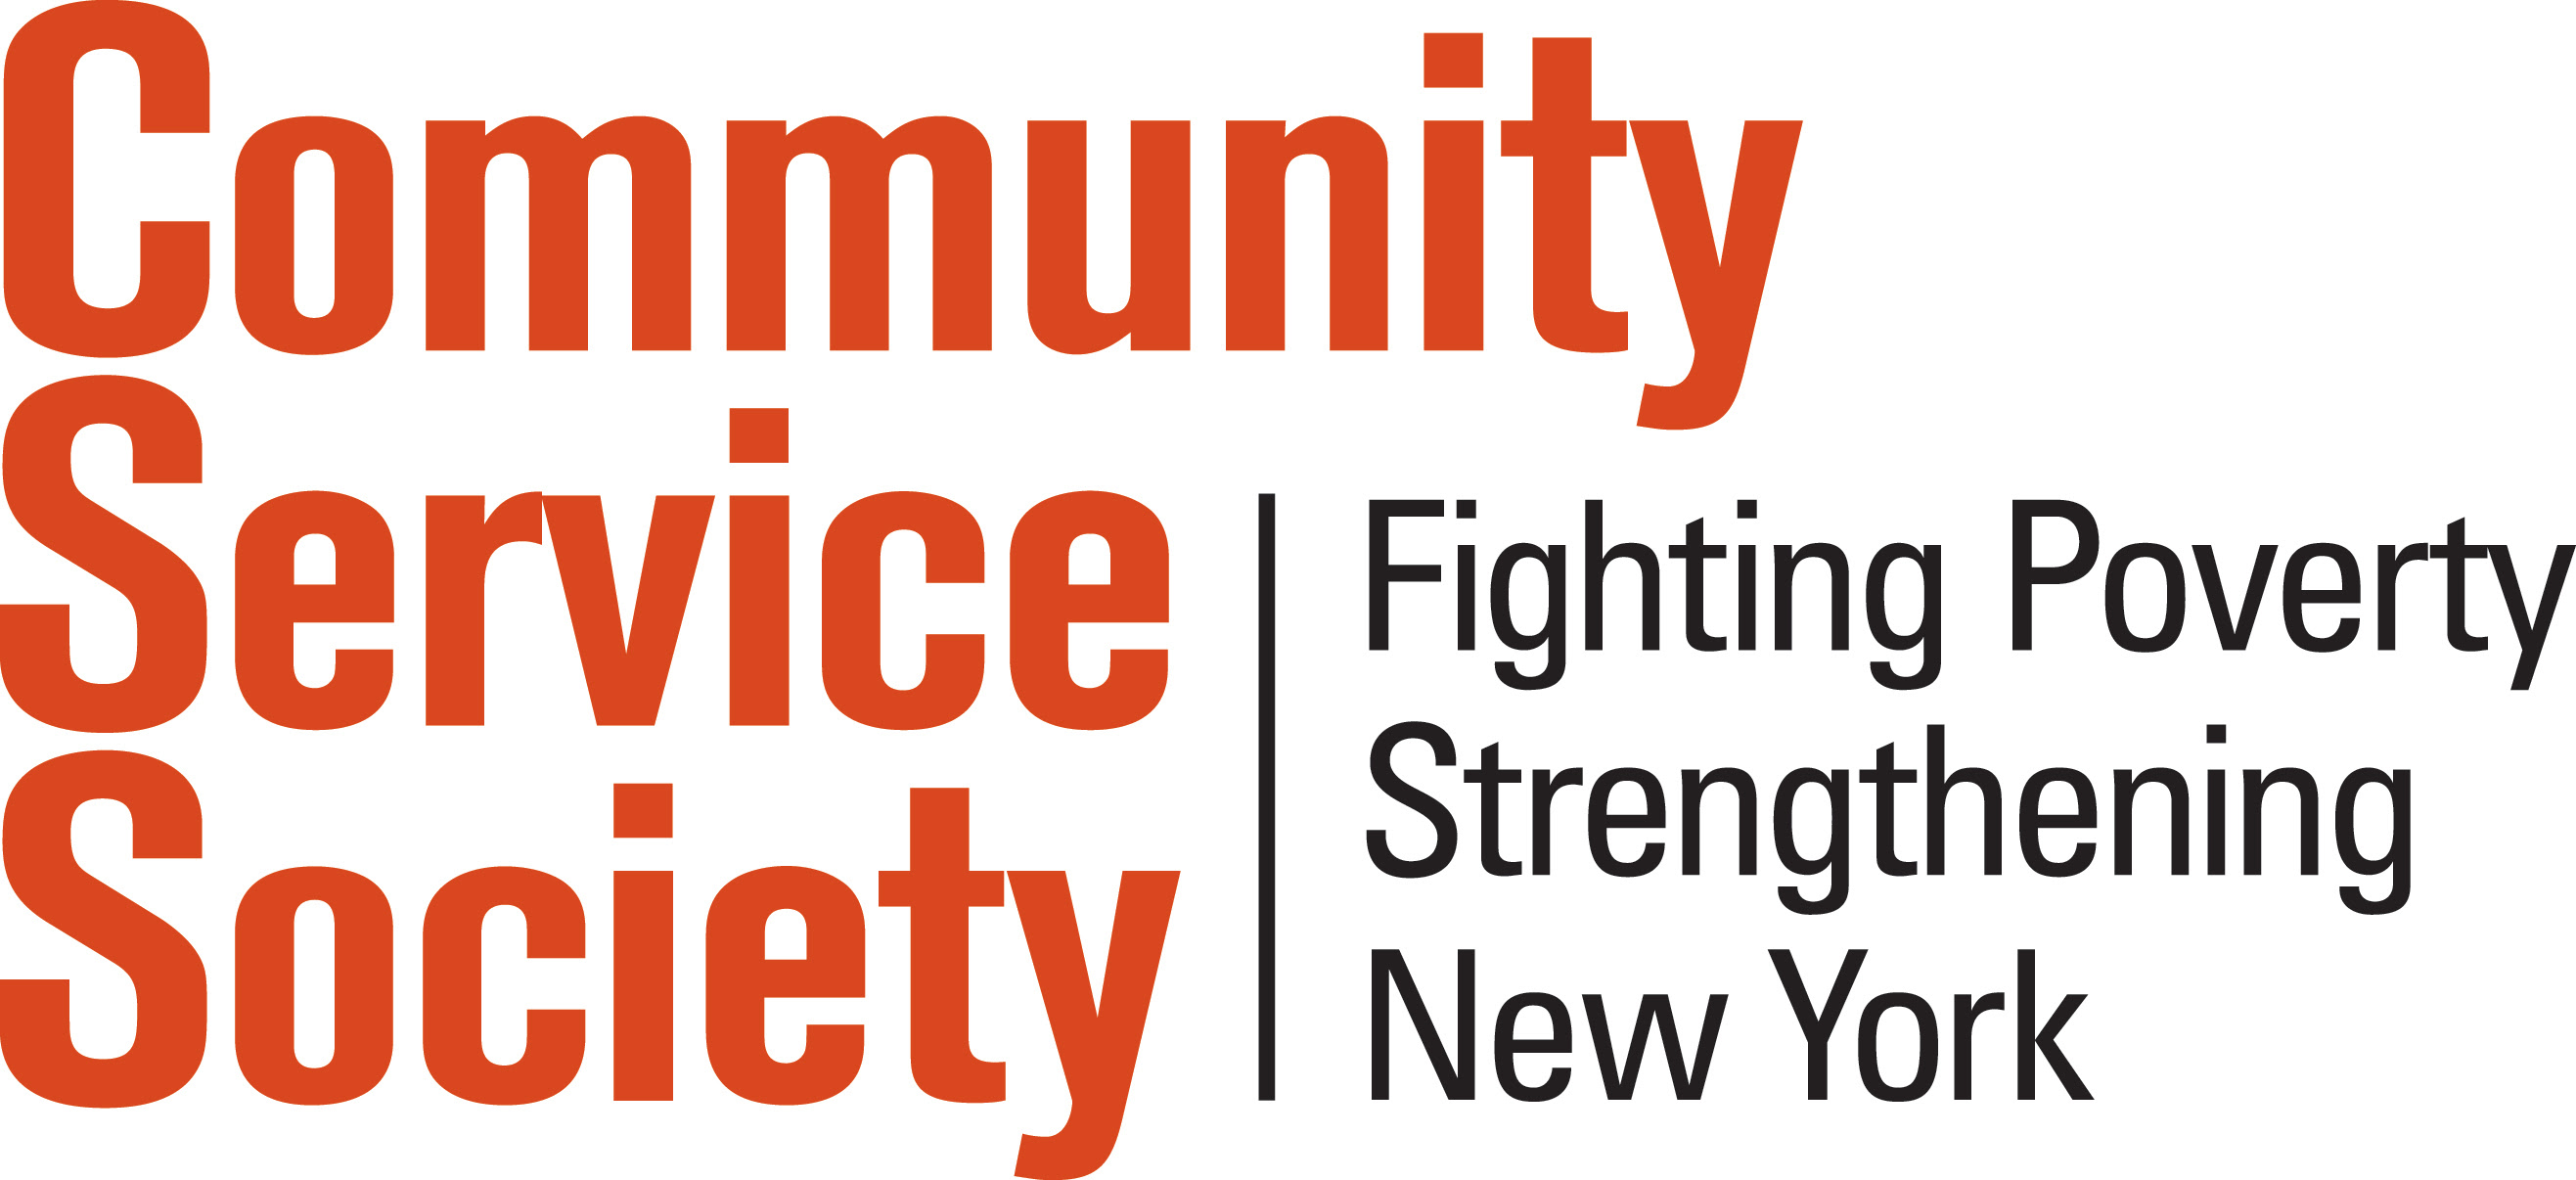 Community Service Society Logo